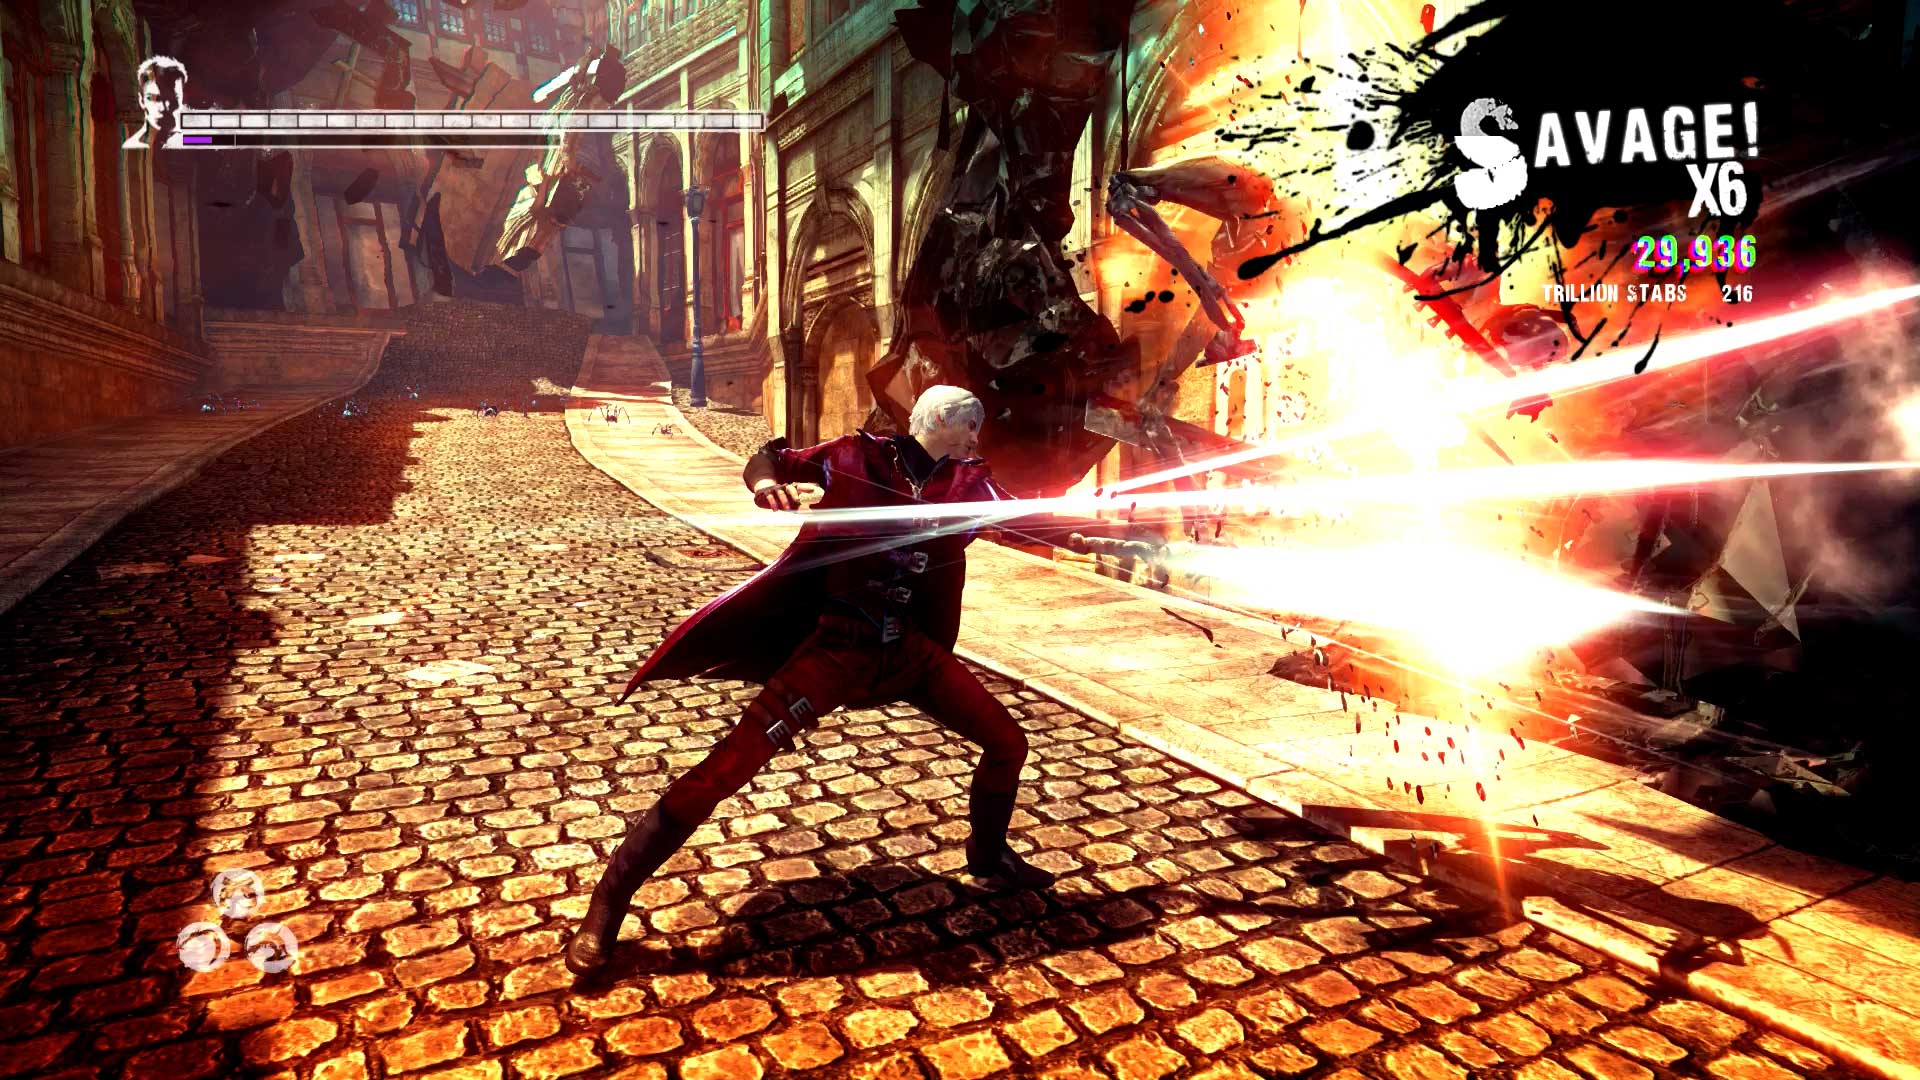 DmC Devil May Cry Midia Digital Ps3 - WR Games Os melhores jogos